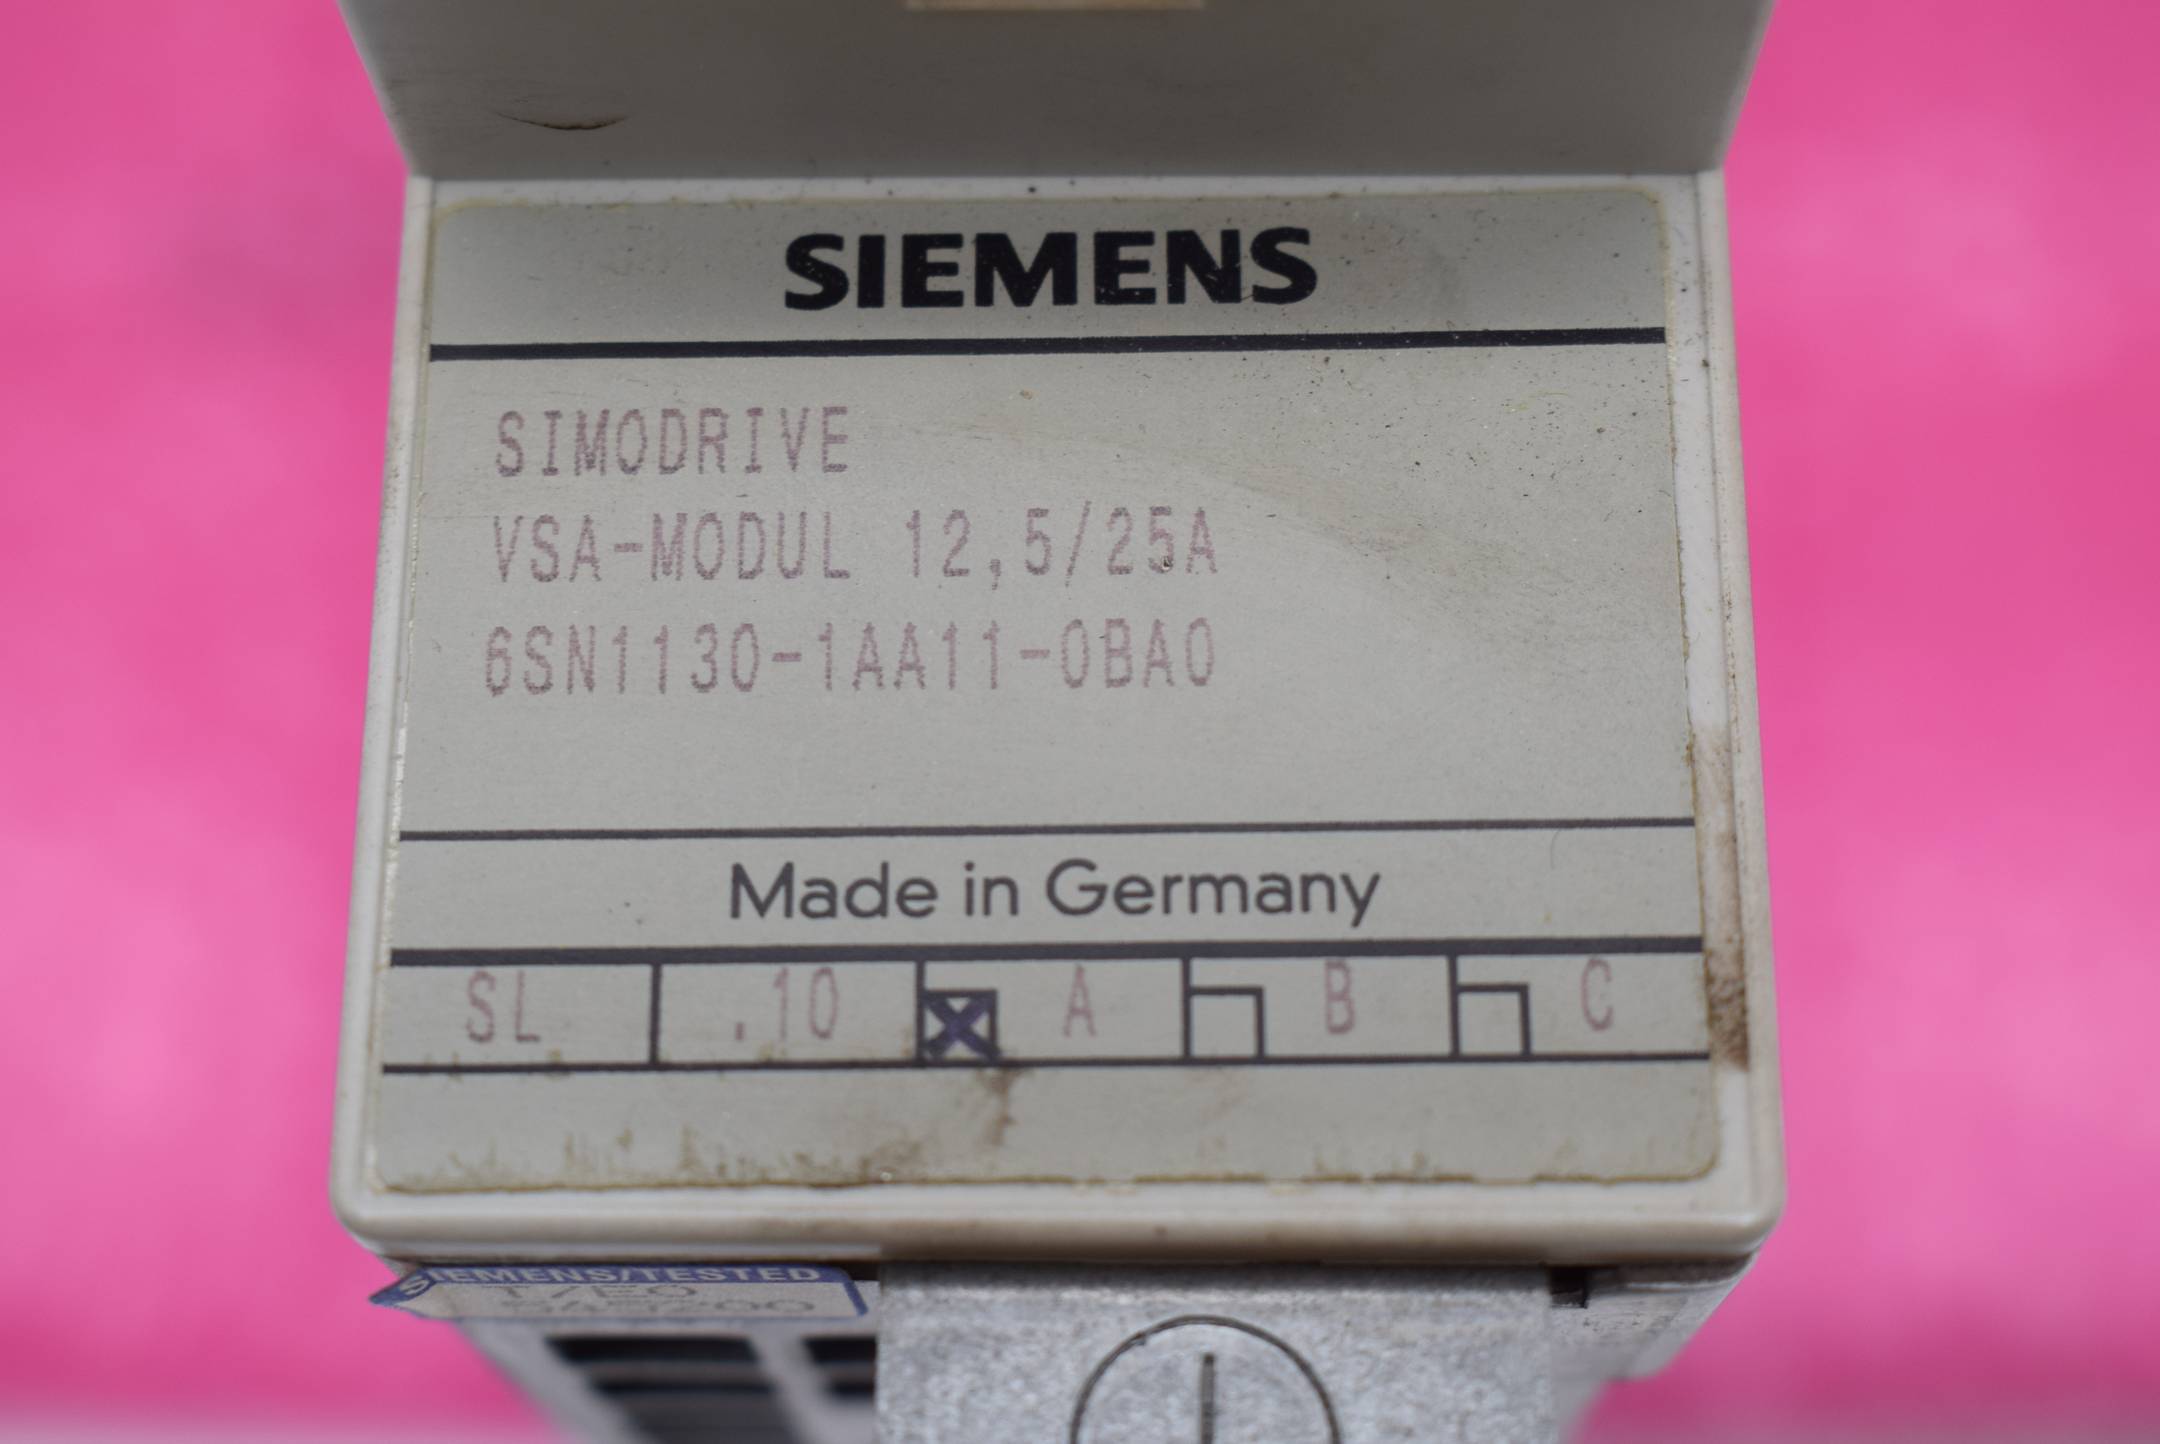 Siemens simodrive VSA-Modul 12,5/25A 6SN1130-1AA11-0BA0 ( 6SN1 130-1AA11-0BA0 )